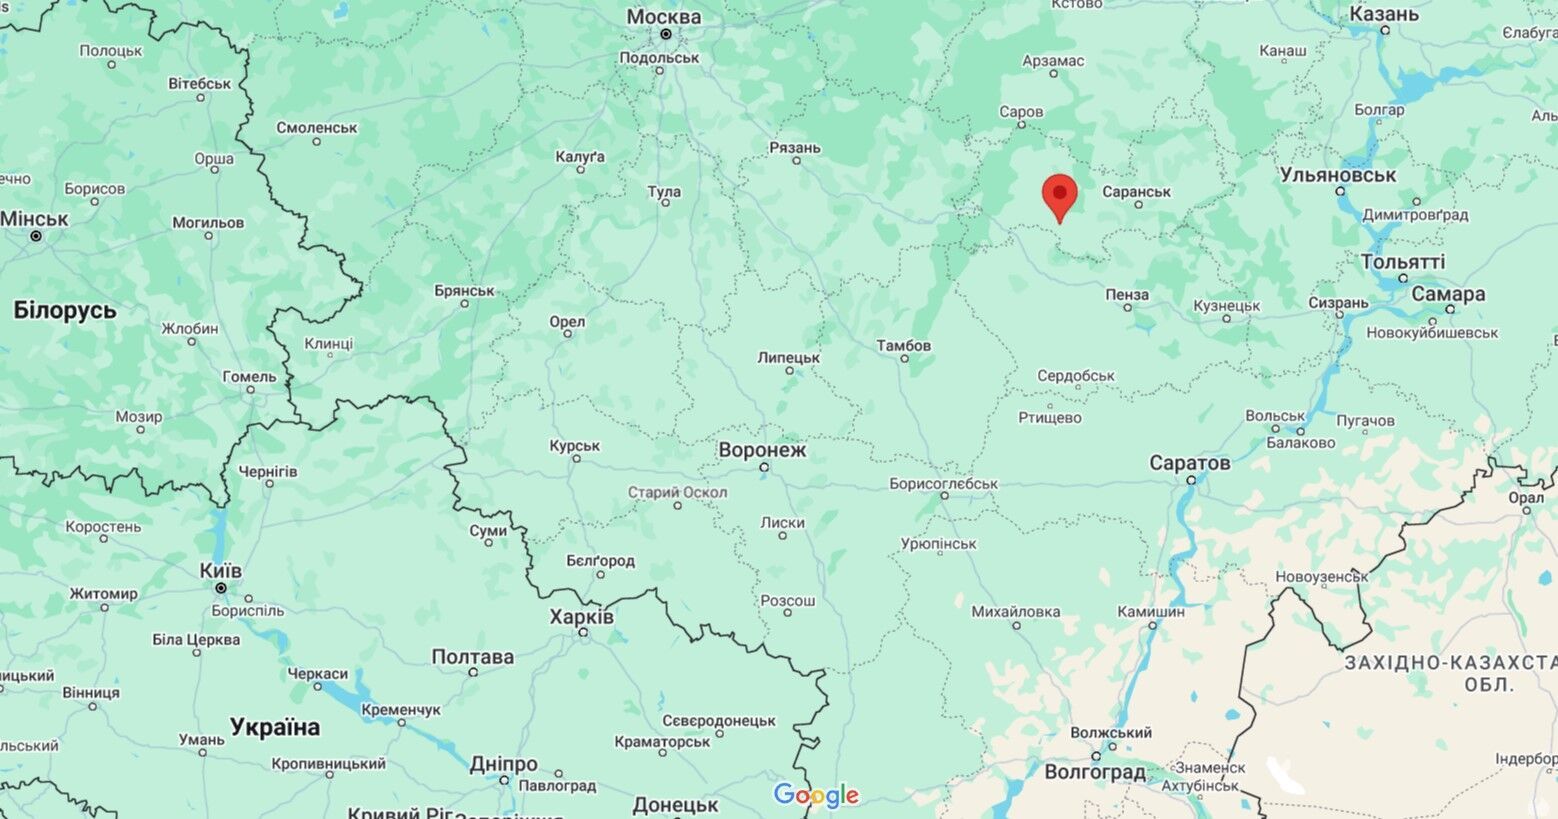 Украинские БПЛА атаковали военную часть в Мордовии, где находится РЛС "Контейнер"